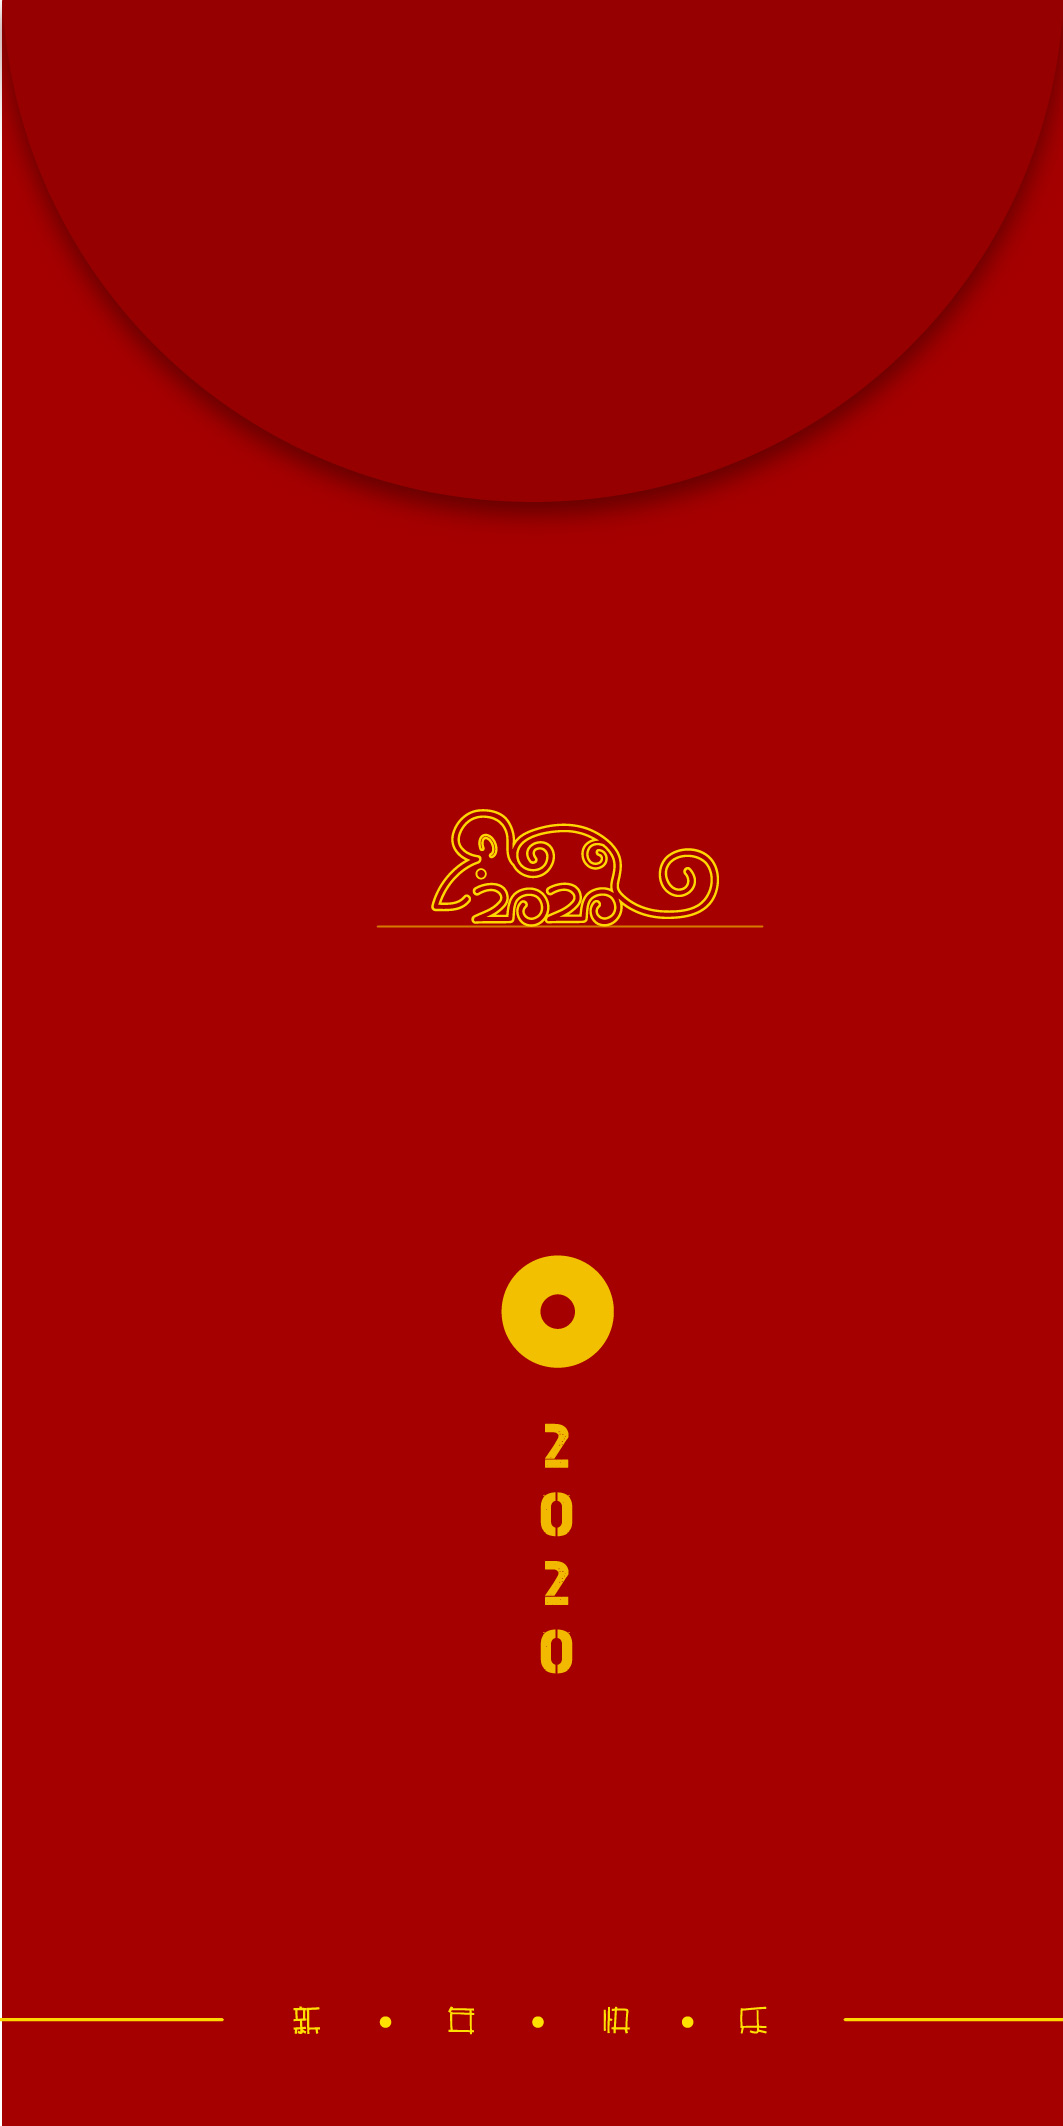 2019鼠年红包贺卡设计